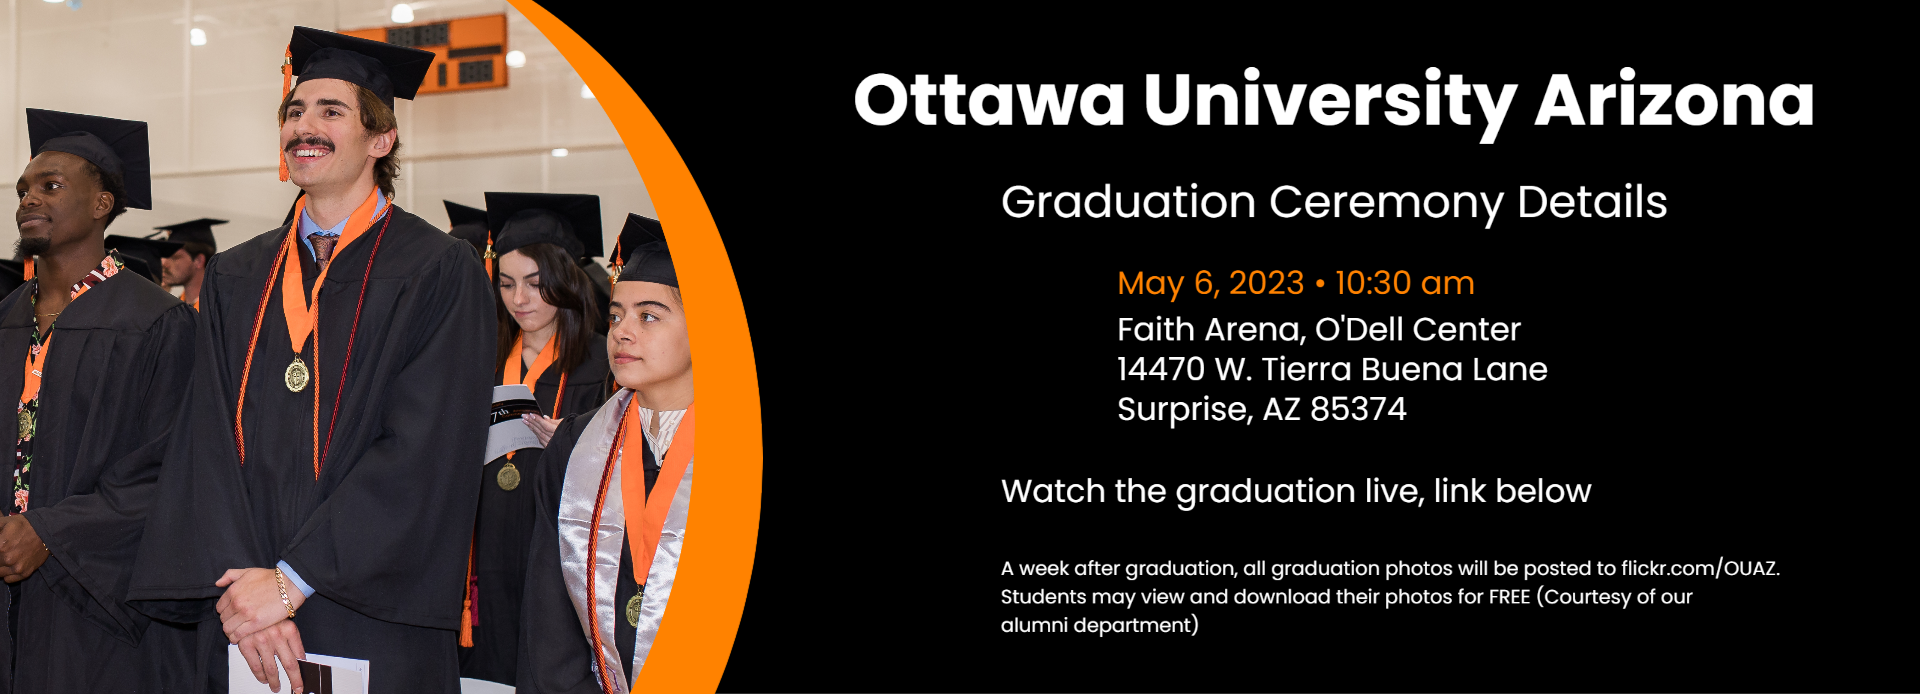 Arizona (OUAZ - Surprise and Phoenix) Graduation Ceremony - April 30, 2022 at 10:30 AM, Faith Arena, O'Dell Center, 15950 N. Civic Center Plaza, Surprise, AZ 85374